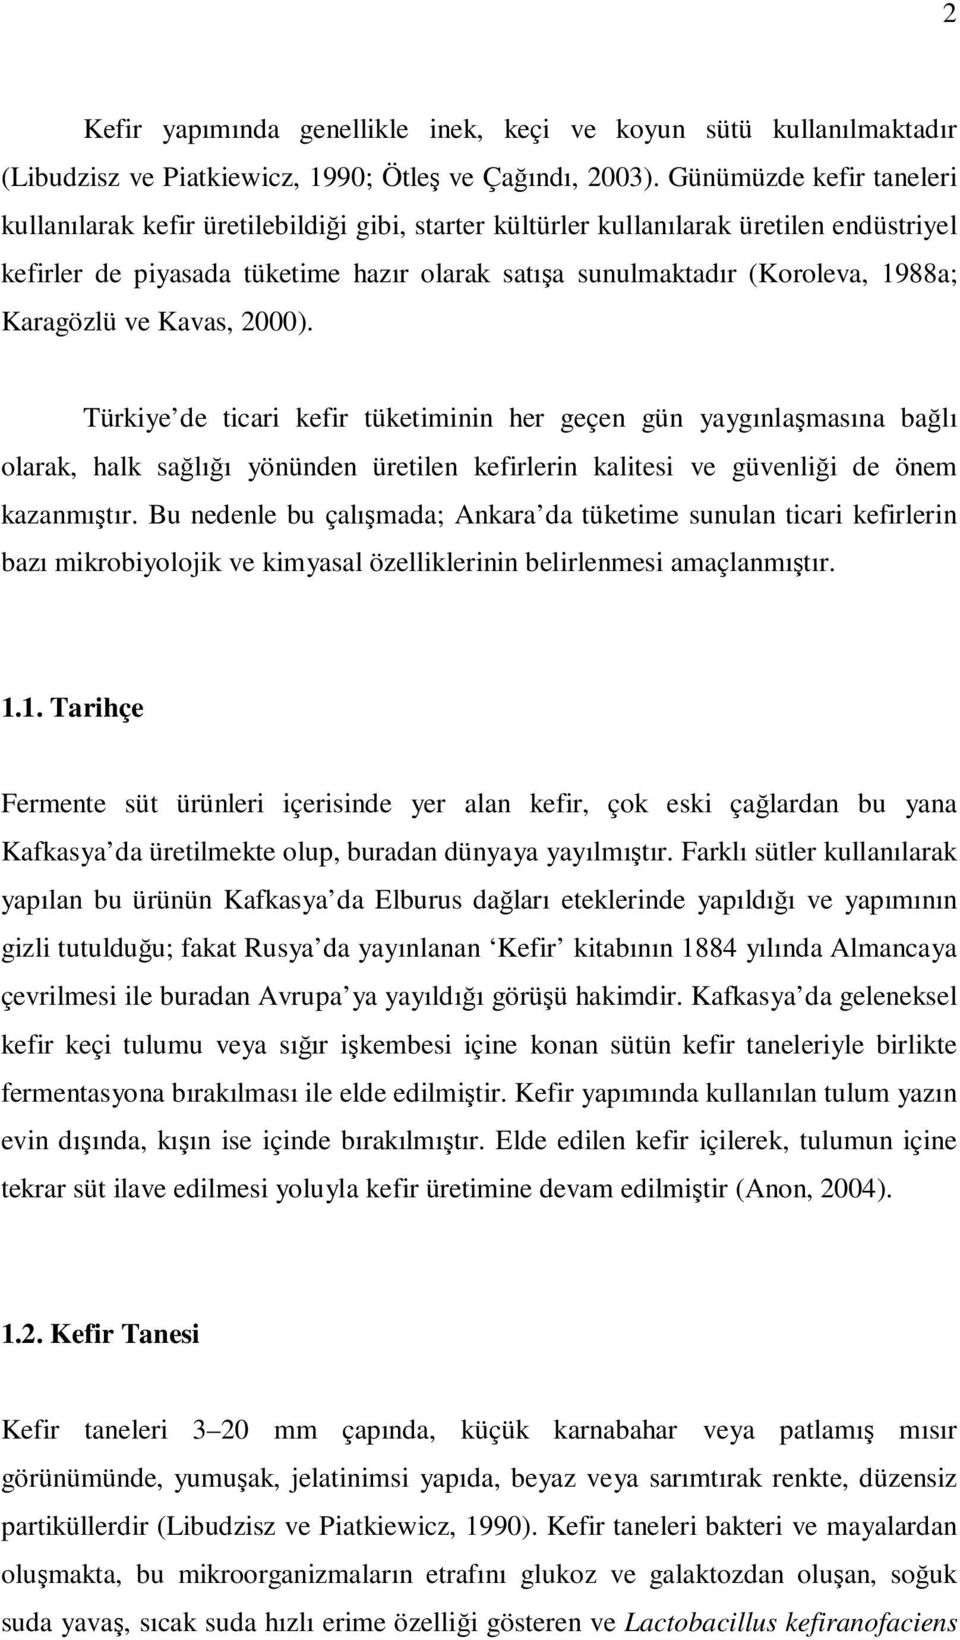 Karagözlü ve Kavas, 2000). Türkiye de ticari kefir tüketiminin her geçen gün yaygınlaşmasına bağlı olarak, halk sağlığı yönünden üretilen kefirlerin kalitesi ve güvenliği de önem kazanmıştır.